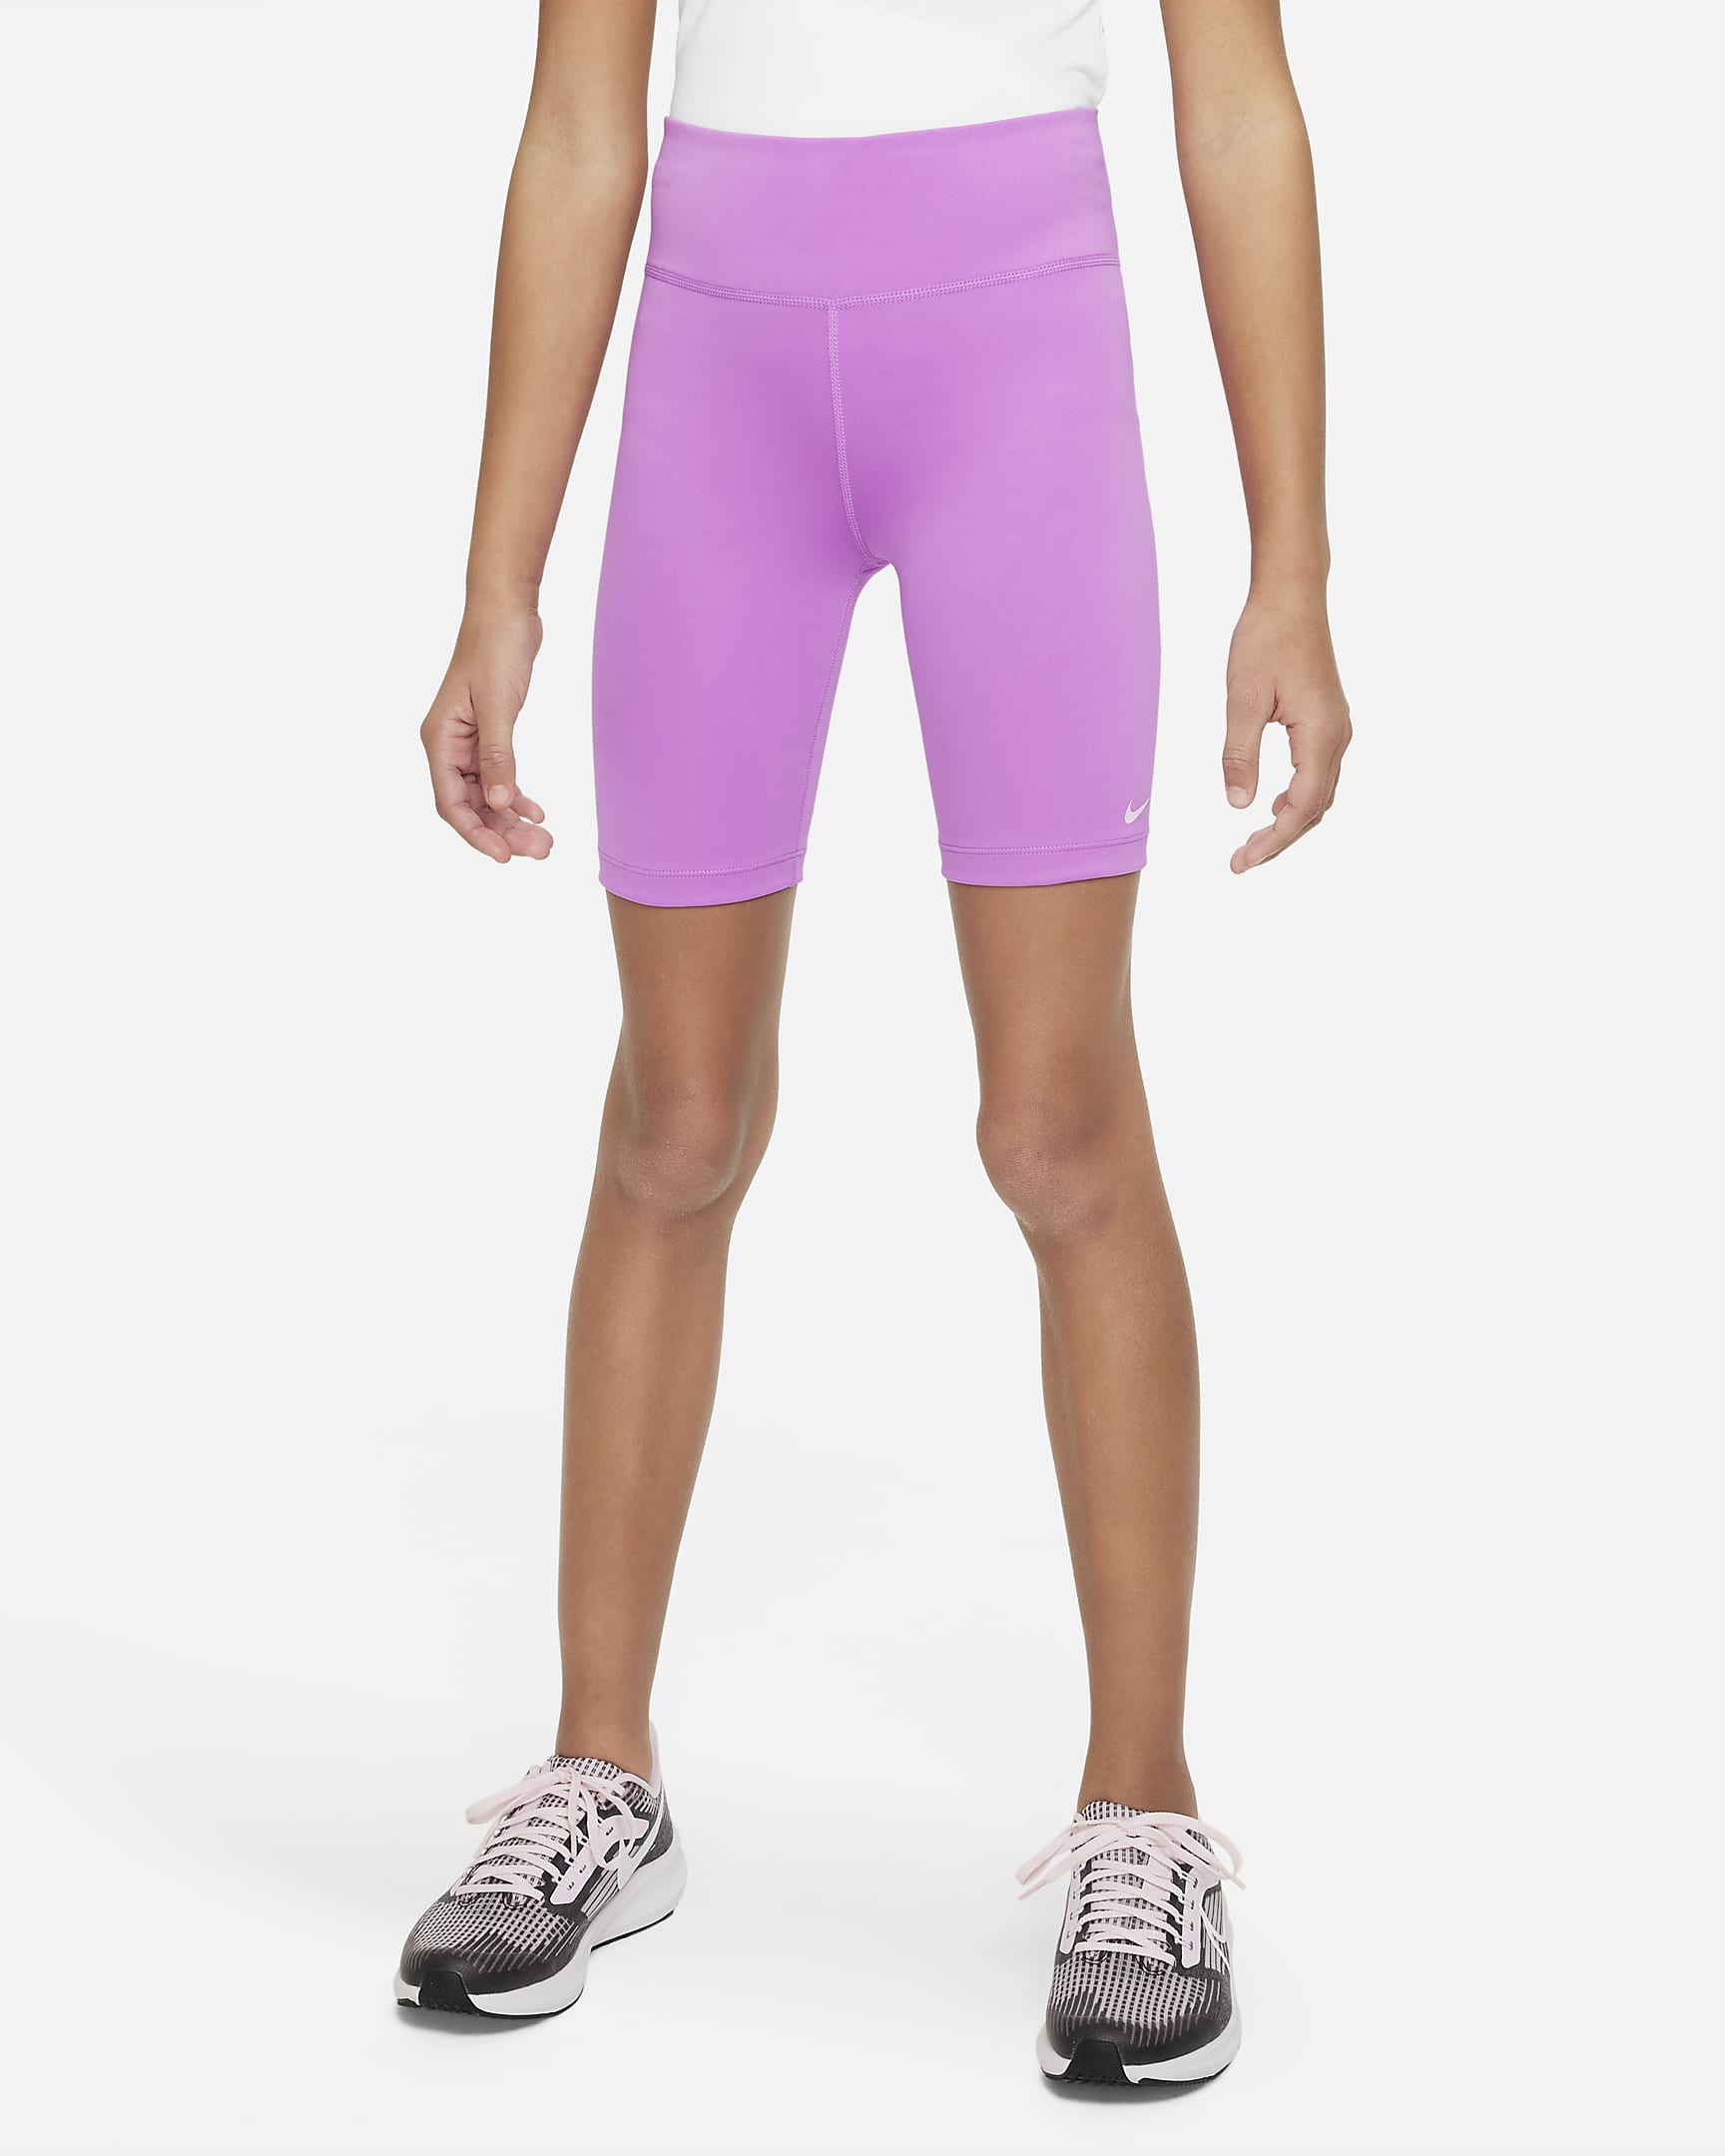 Nike One Big Kids' (Girls') Bike Shorts. Nike.com